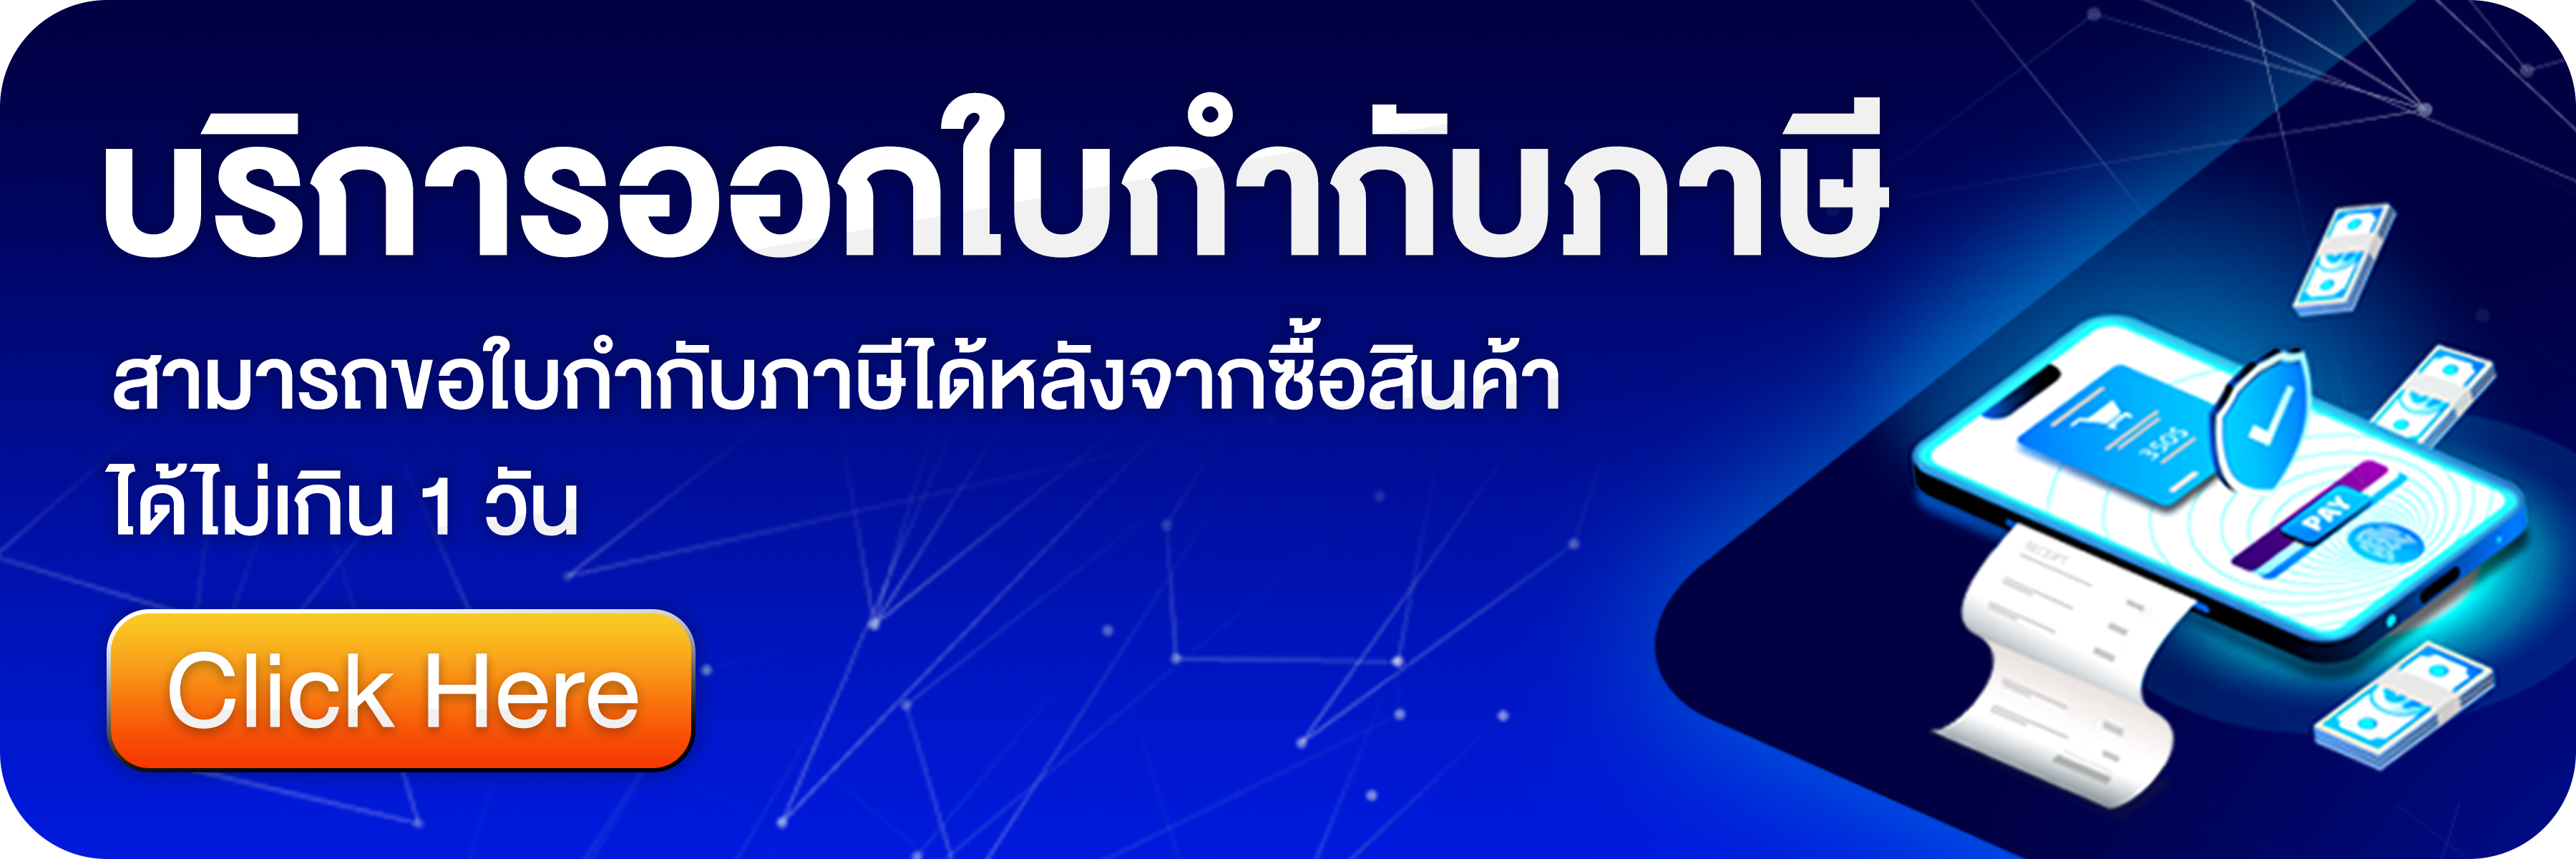 ที่สุดแห่งซิมเน็ต ถูก และ คุ้มค่าที่สุด การันตียอดขายอันดับ 1 ของไทย